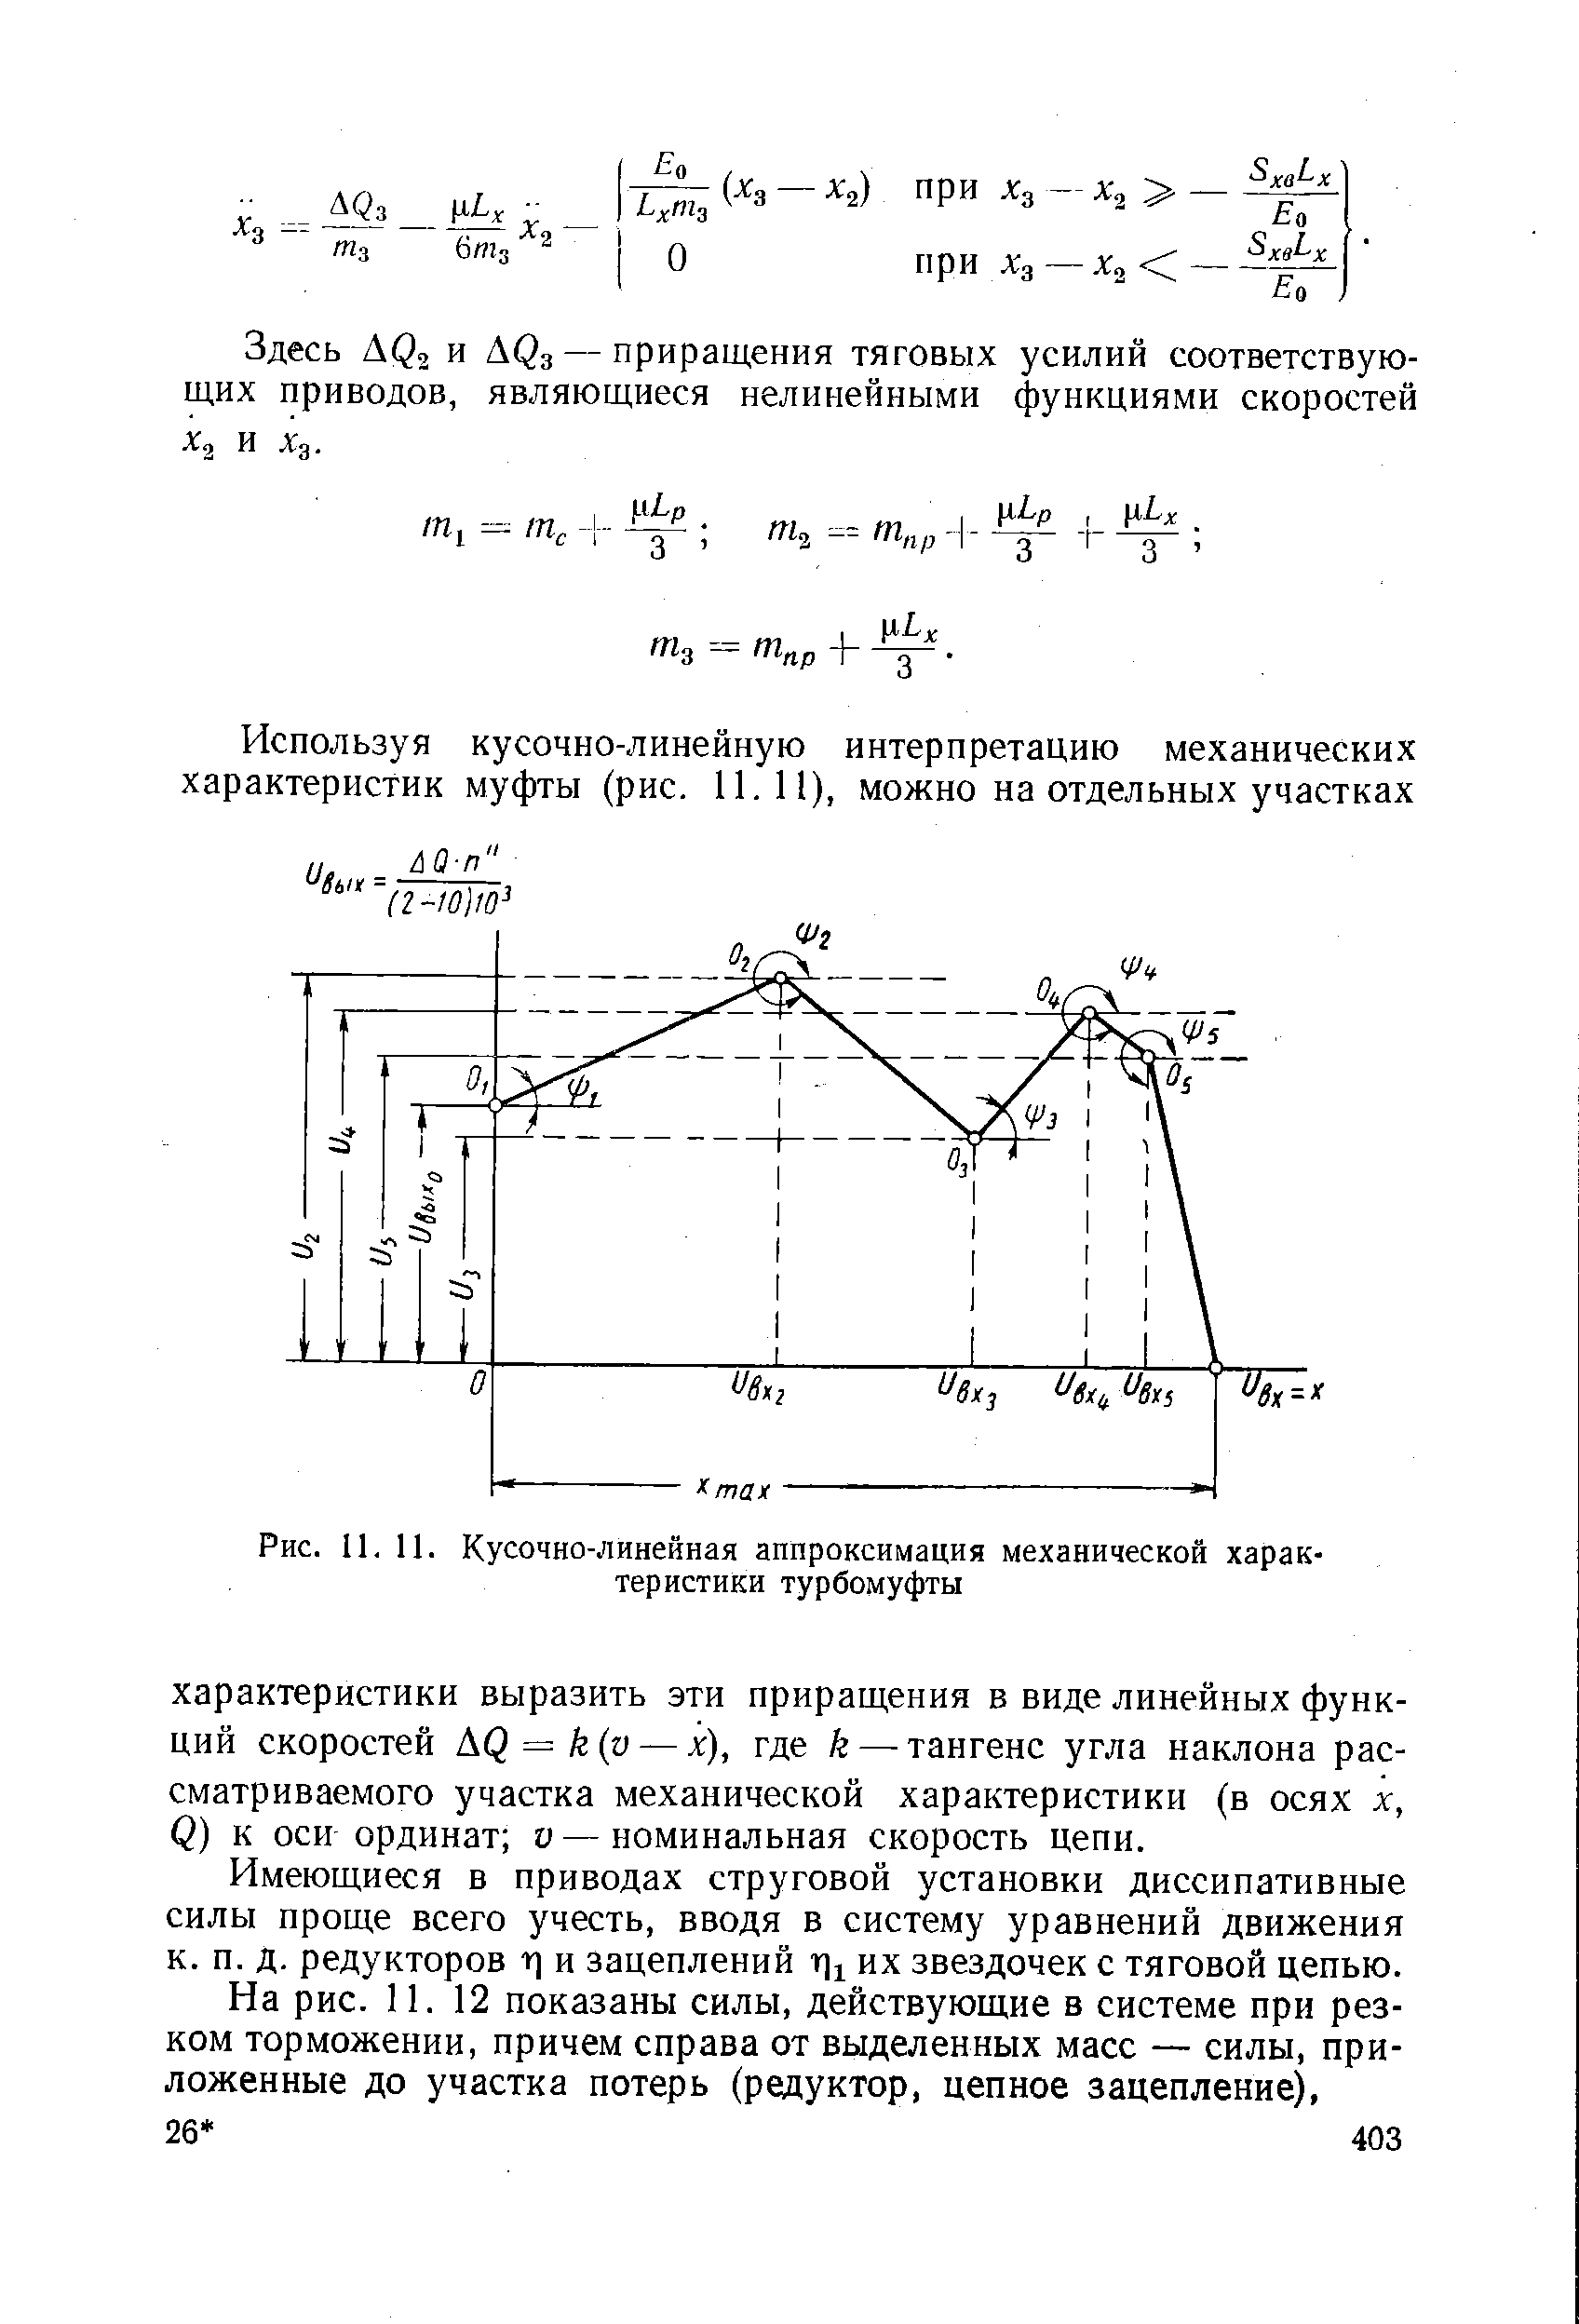 Рис. II. 11. Кусочно-линейная аппроксимация механической характеристики турбомуфты
